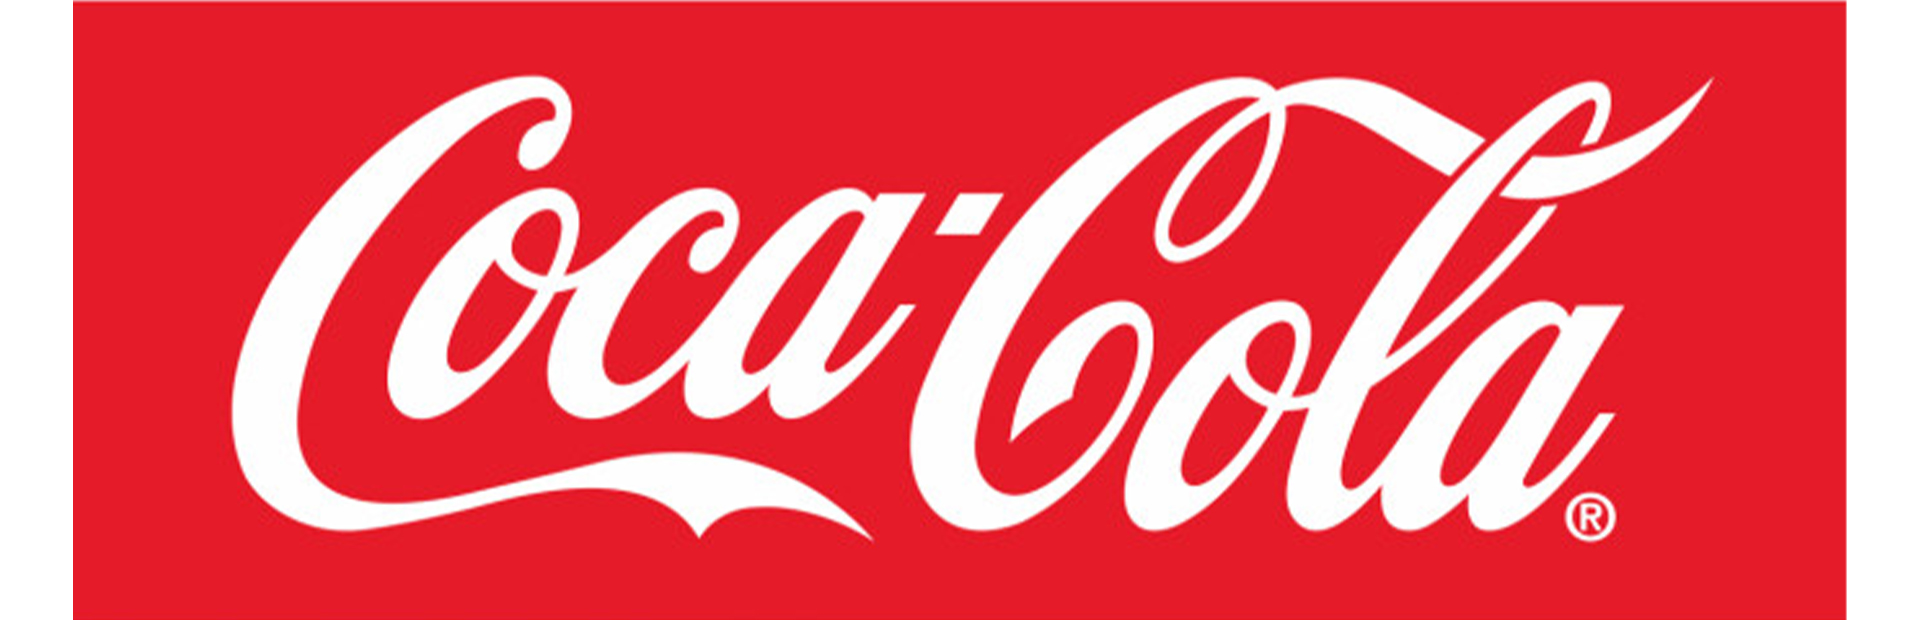 Coca-Cola launches new campaign